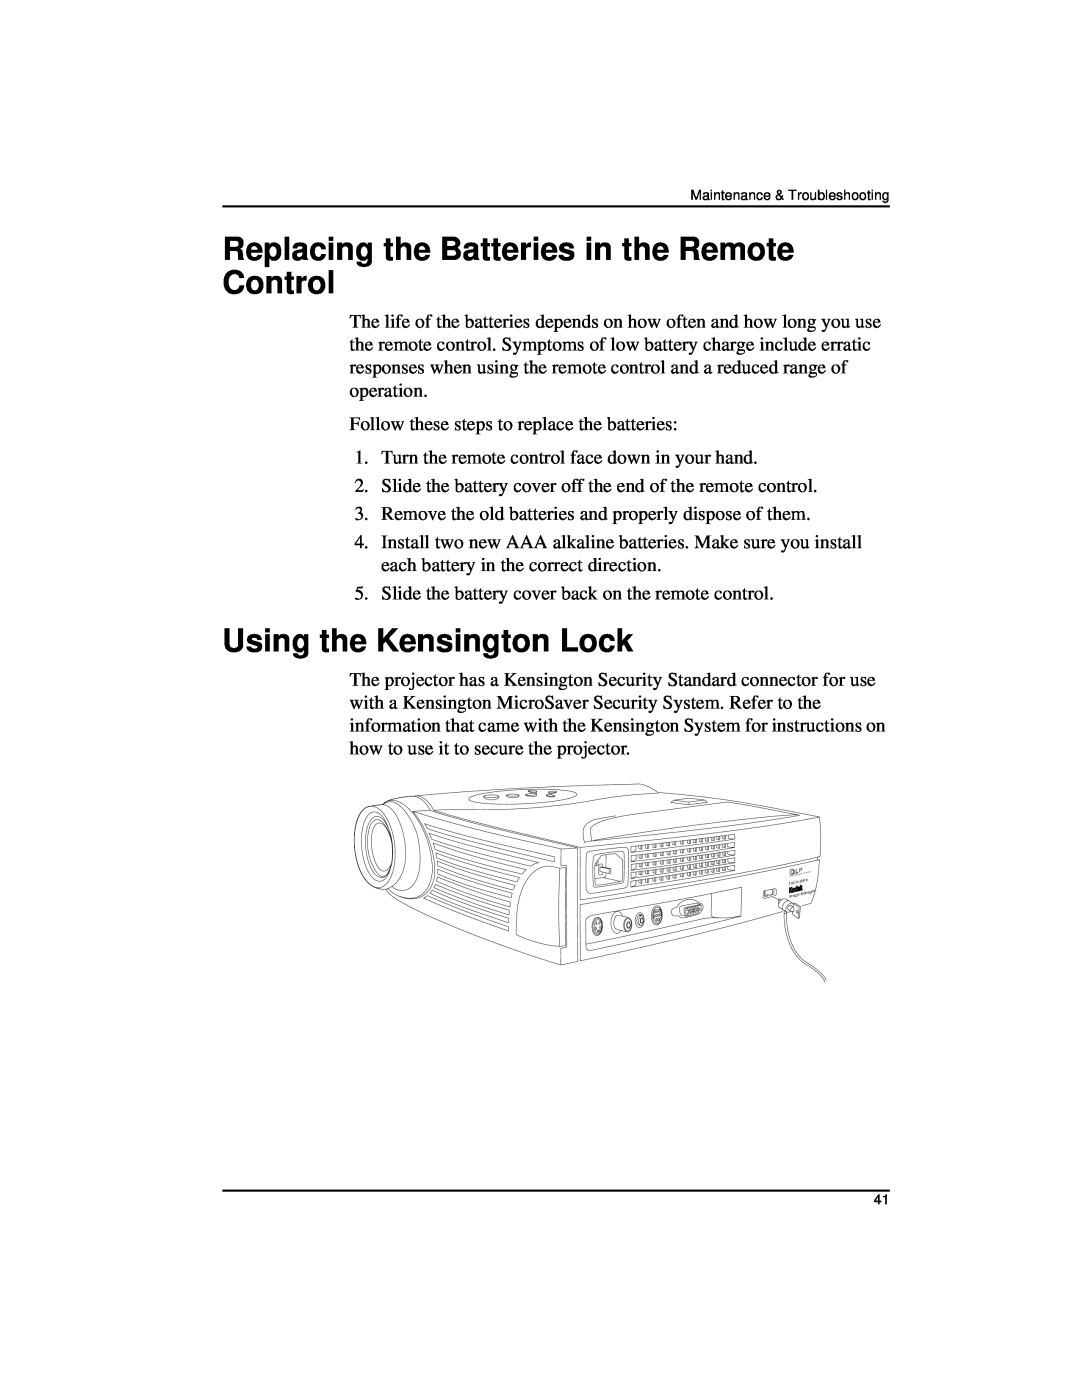 Kodak DP2000 manual Replacing the Batteries in the Remote Control, Using the Kensington Lock 